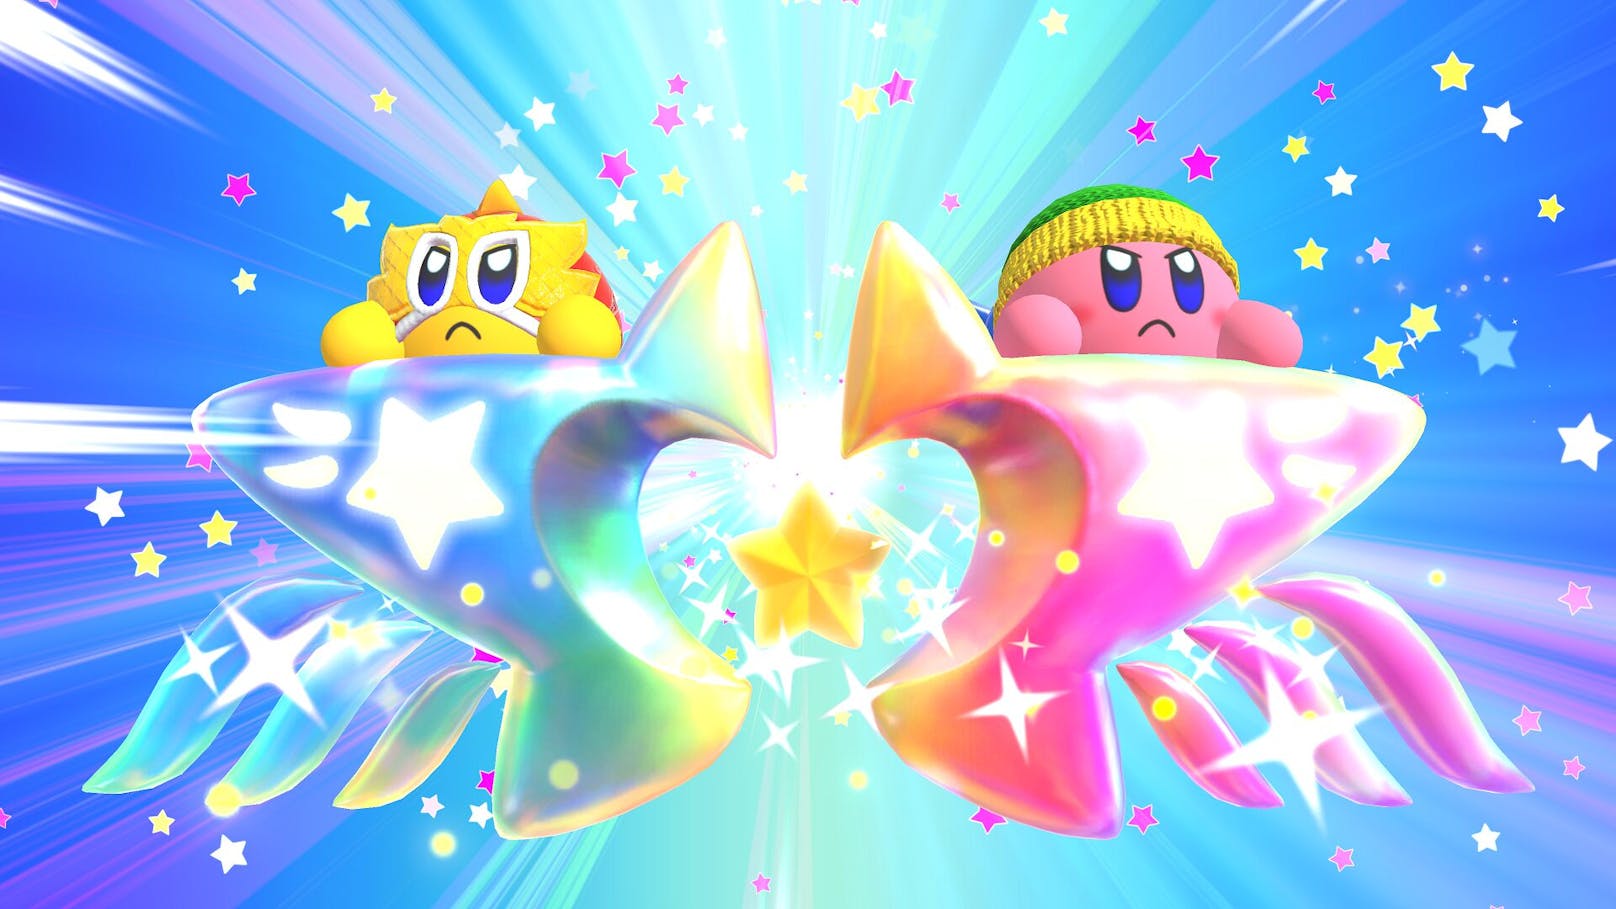 Gerade was die Abwechslung bei Modi und Figuren betrifft, kann das Game einem "Super Smash Bros. Ultimate" nicht das Wasser reichen. Als netter Prügler für Zwischendurch ohne Kampf-Vorwissen ist "Kirby Fighters 2" aber gut geeignet.